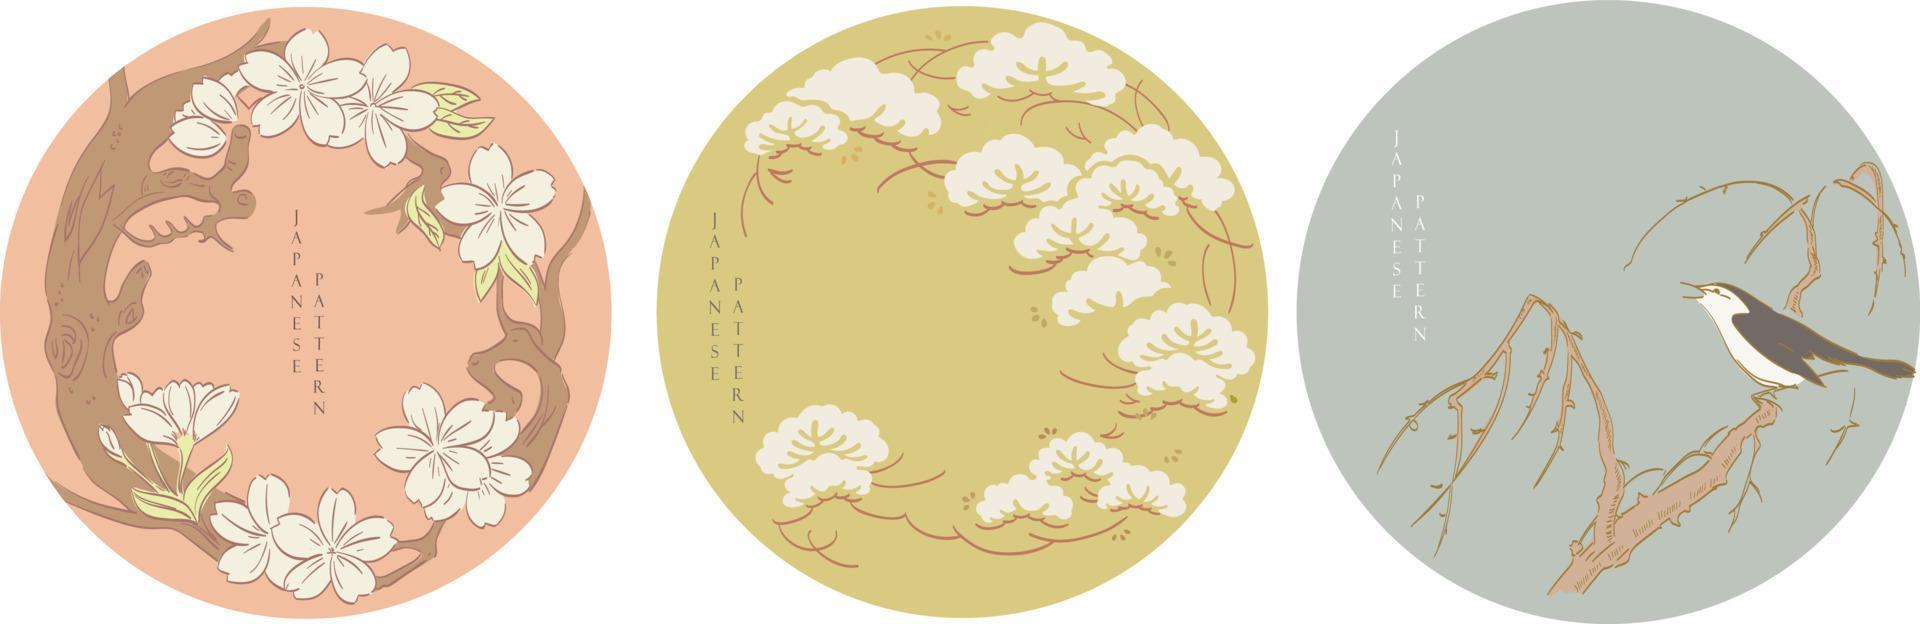 Hintergrund der abstrakten Künste mit japanischem Mustervektor. Kunstlandschaft mit geometrischer Vorlage Kunstbürstenelemente mit zeitgenössischem Plakatdesign. kirschblütenblume, bonsaibaum und vogelobjekt vektor